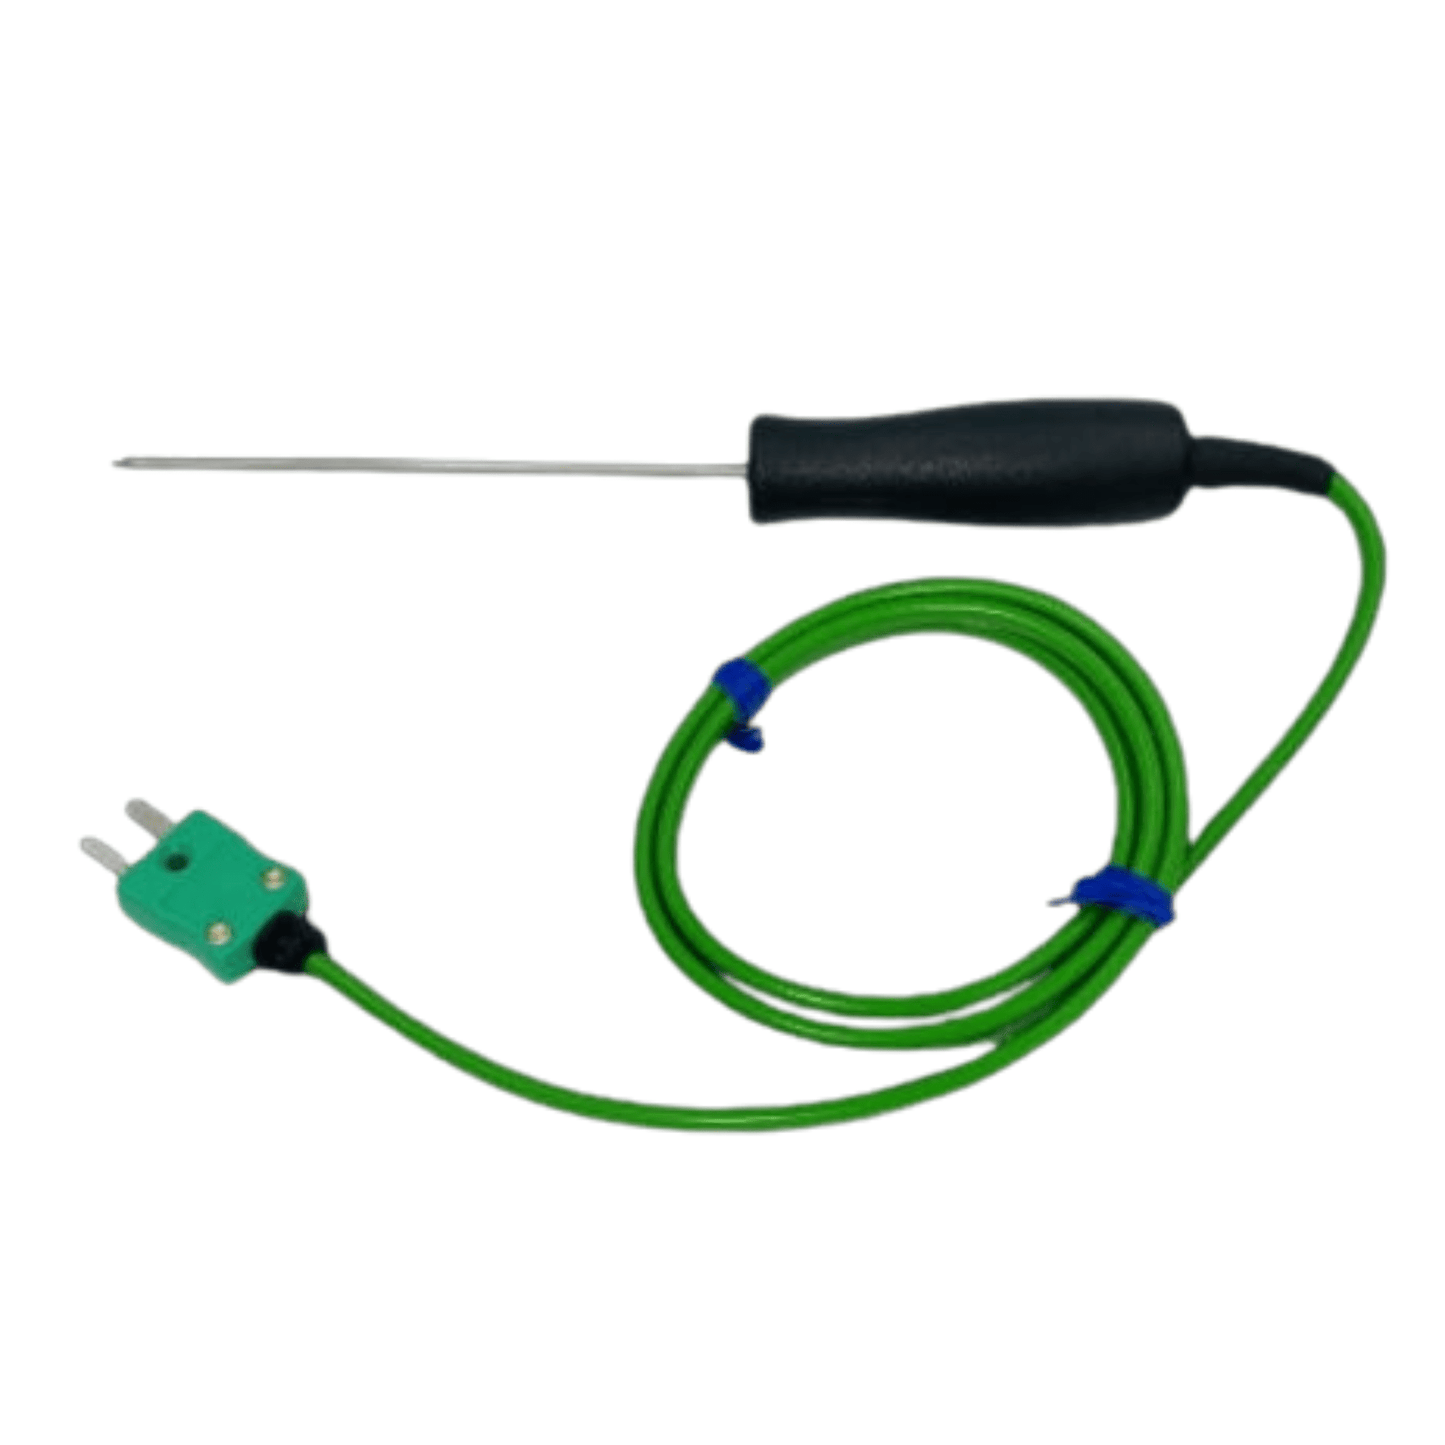 Une Sonde de pénétration miniature à piquer verte avec un fil attaché, parfaite pour vérifier les aliments délicats par Thermomètre.fr.